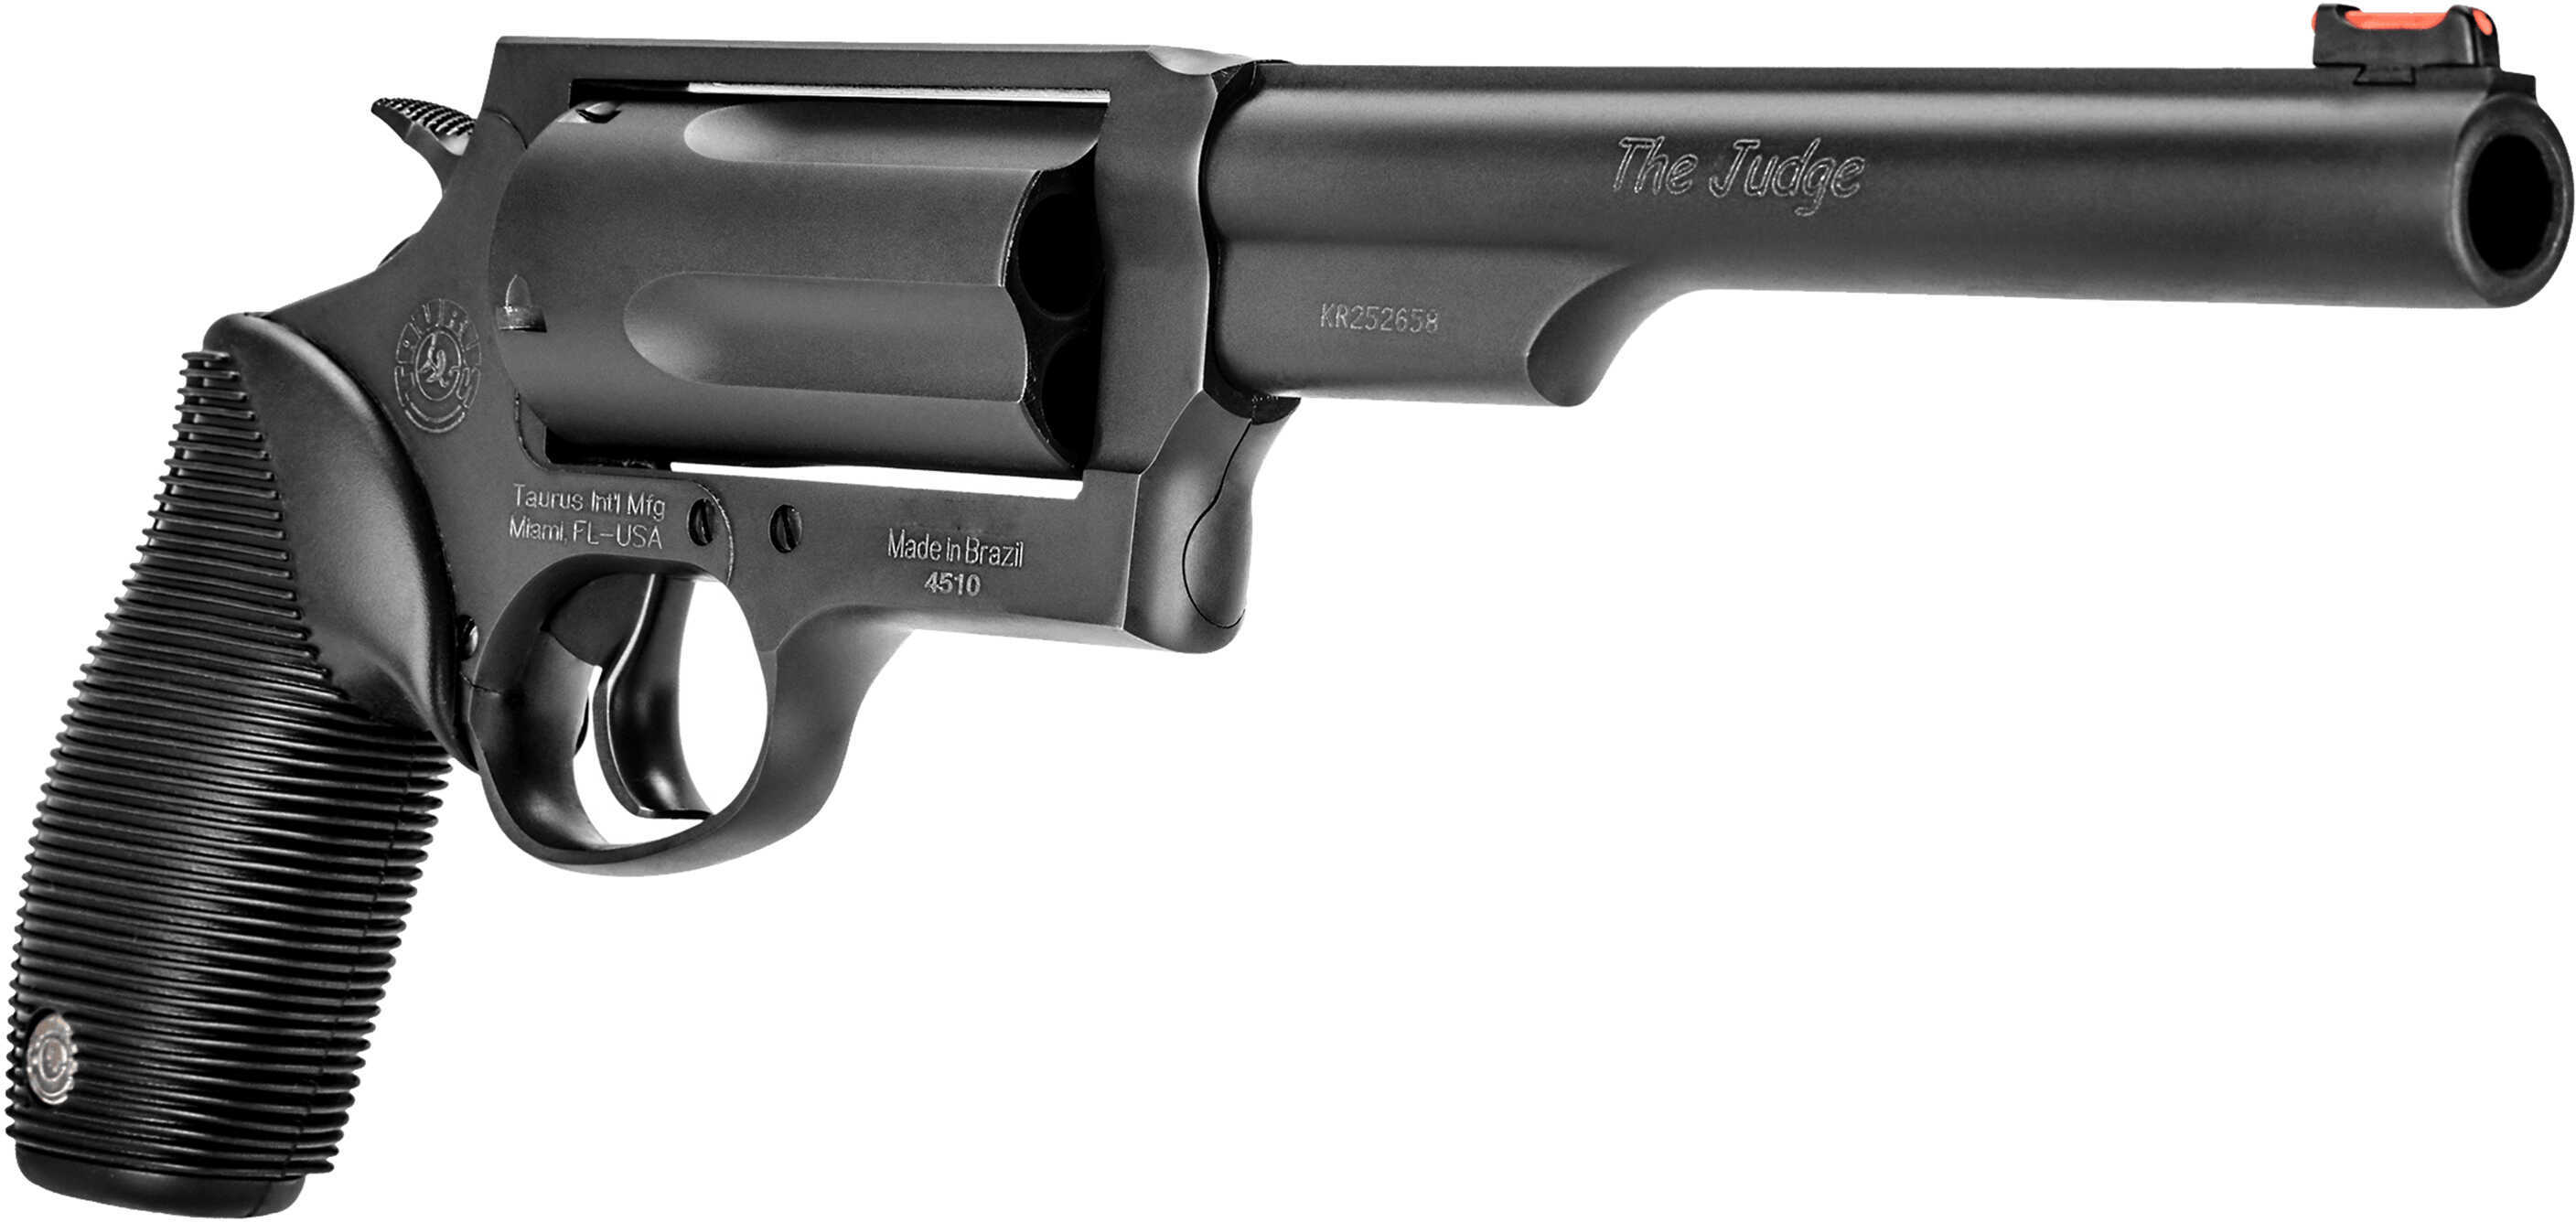 Taurus Judge Magnum 45 Colt (LC) Caliber Or 3" 410 Gauge with 6.50" Barrel 5 Shot Cylinder Overall Matte Black Oxide Finish Steel & Black Ribber Grip Fiber Optic Front Sight